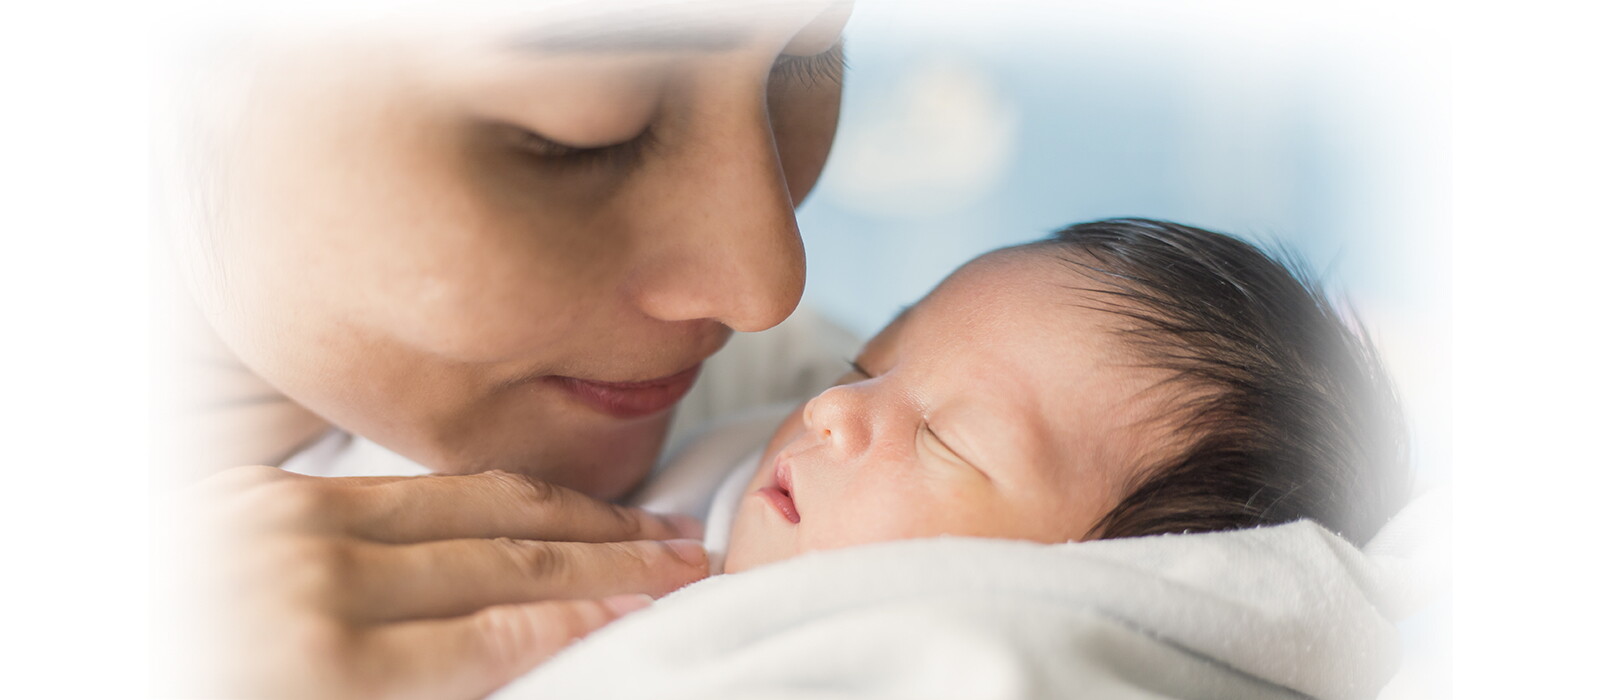 Tips Antipanik Cara Merawat Bayi Baru Lahir